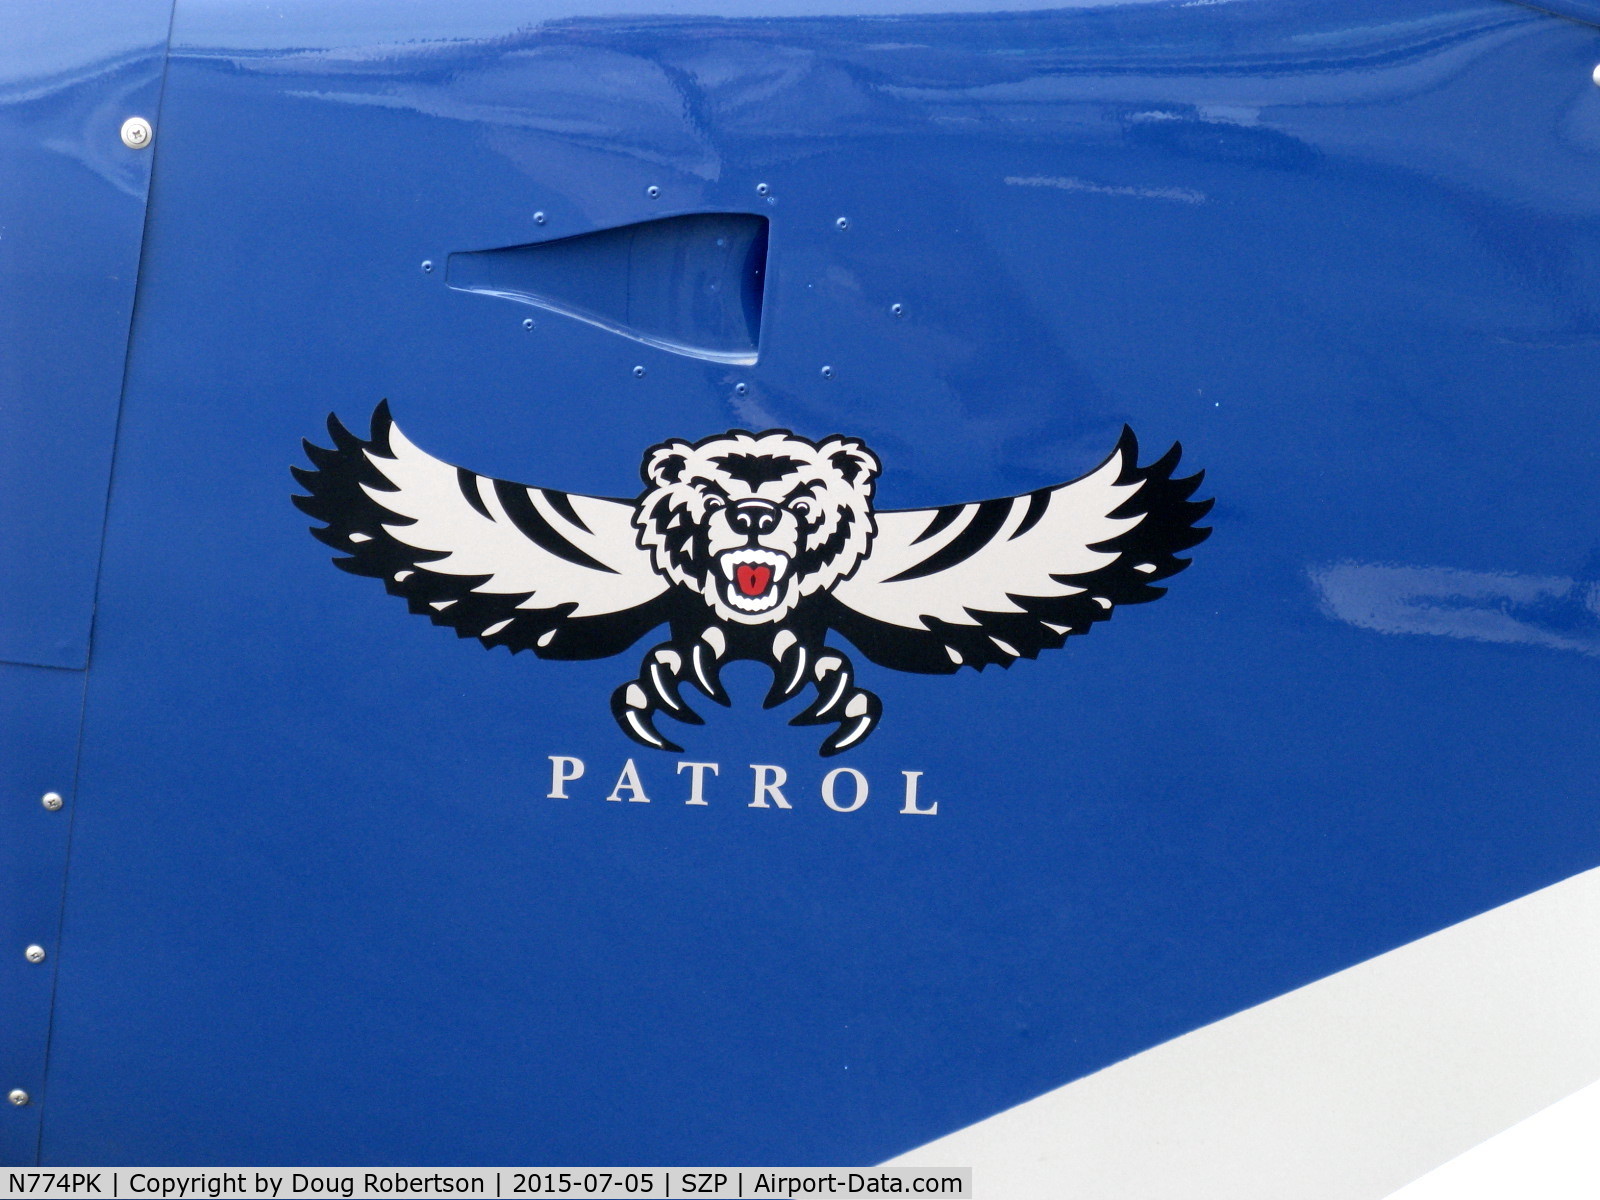 N774PK, Barrows Bearhawk Patrol C/N 007, Barrows BEARHAWK PATROL, Lycoming O-320-B1B 160 Hp, logo